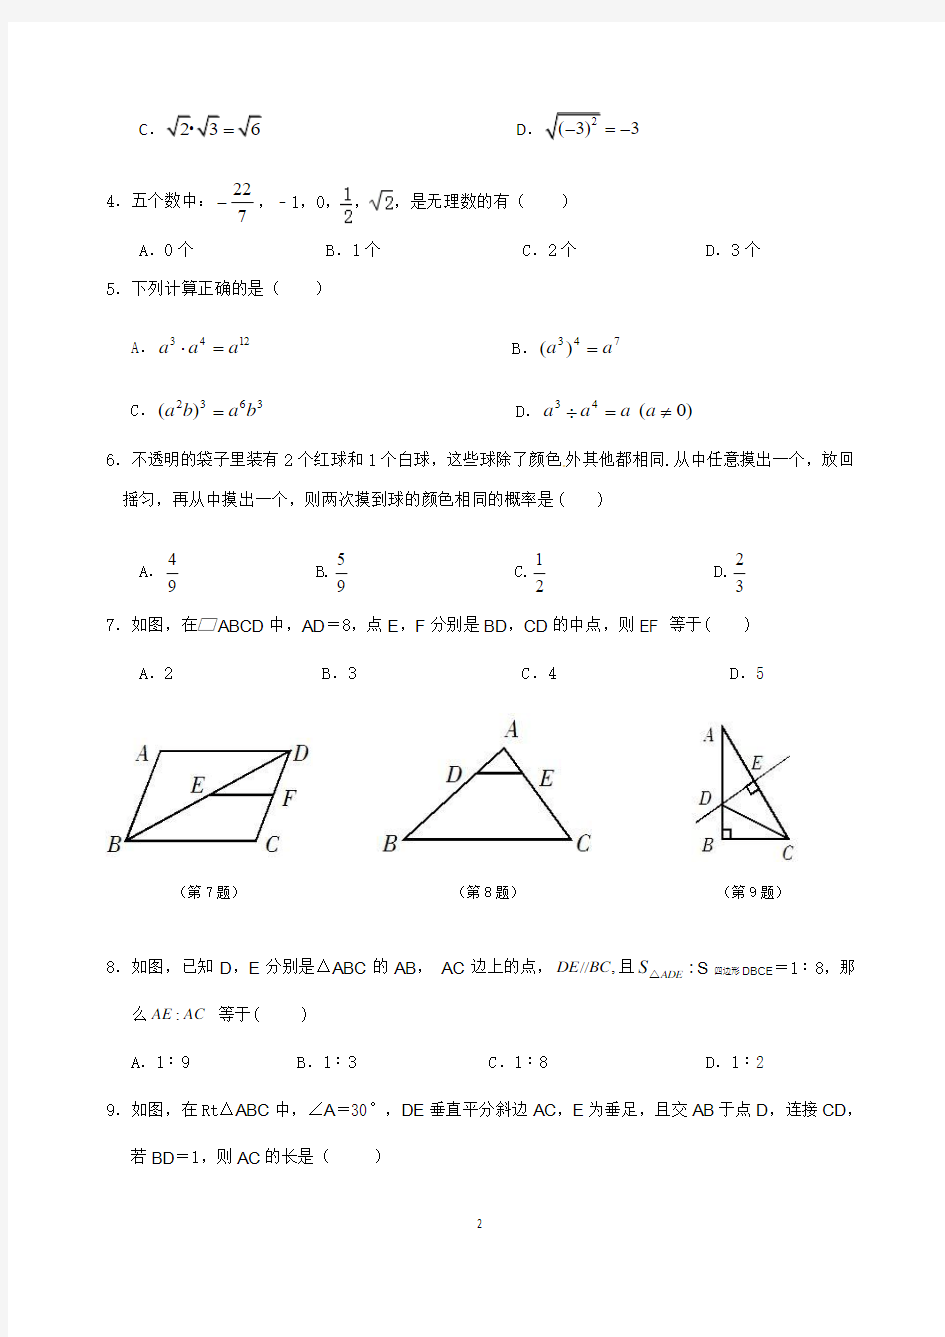 2014年广东省中考数学模拟试题(二)